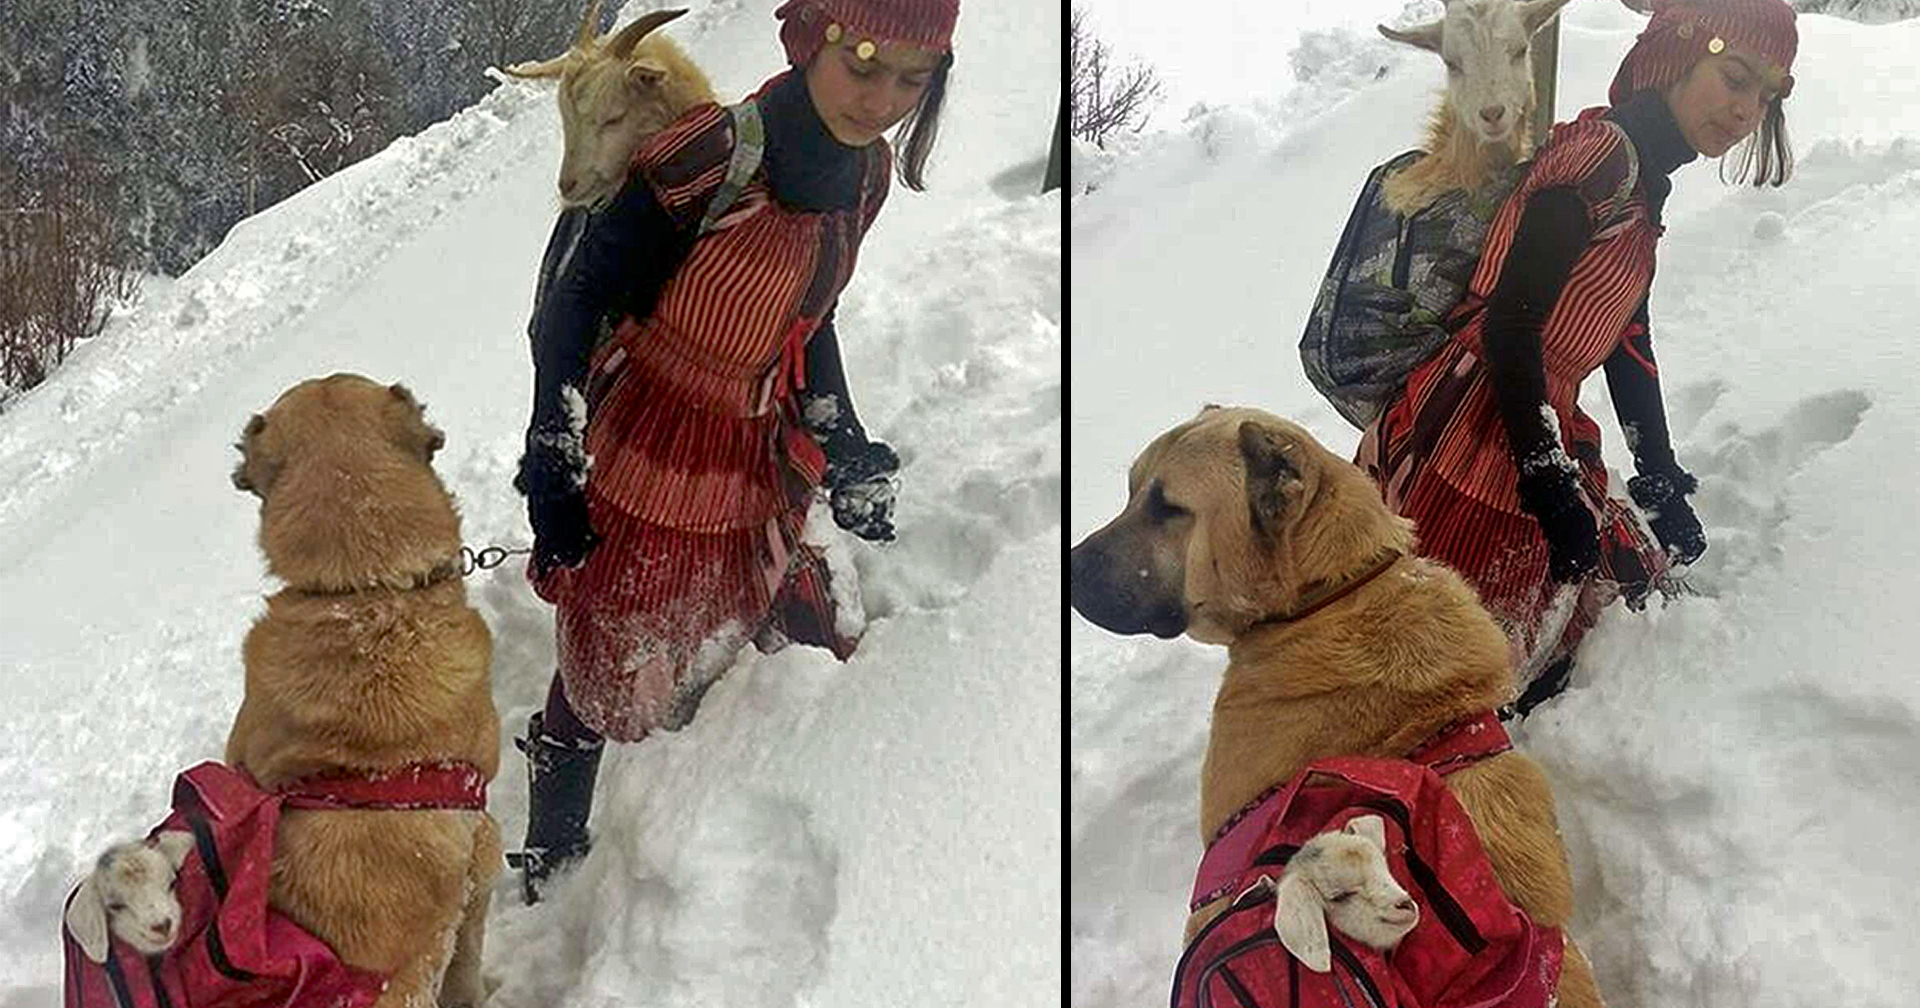 ภารกิจน่าเอ็นดู๊ว เด็กหญิงกับหมาคู่ใจช่วยแพะแม่ลูกอ่อนจากภูเขาหิมะ